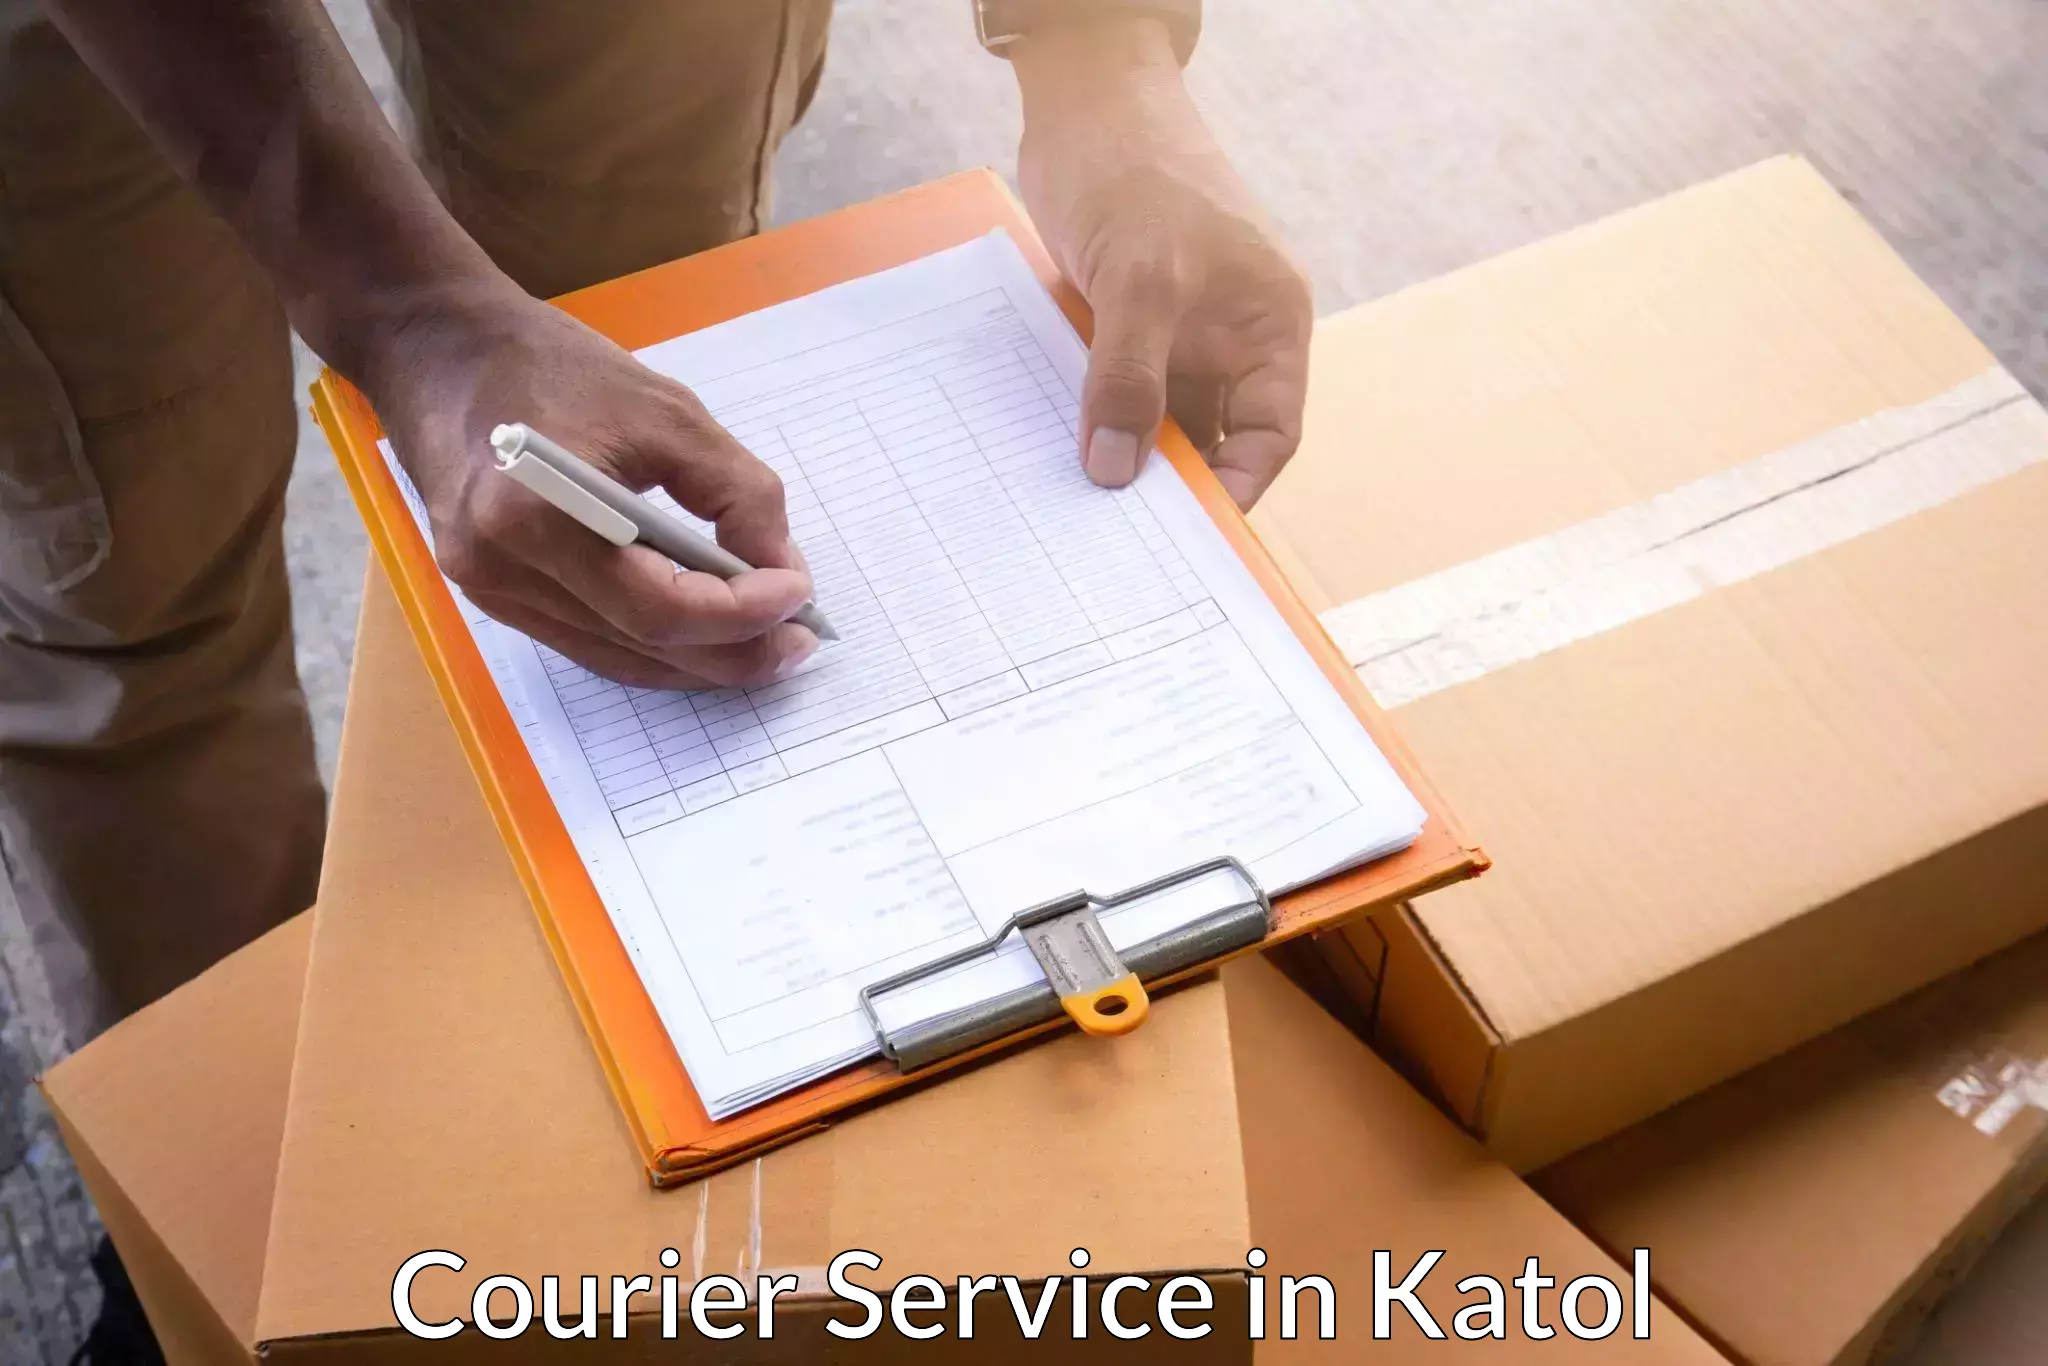 Courier service comparison in Katol